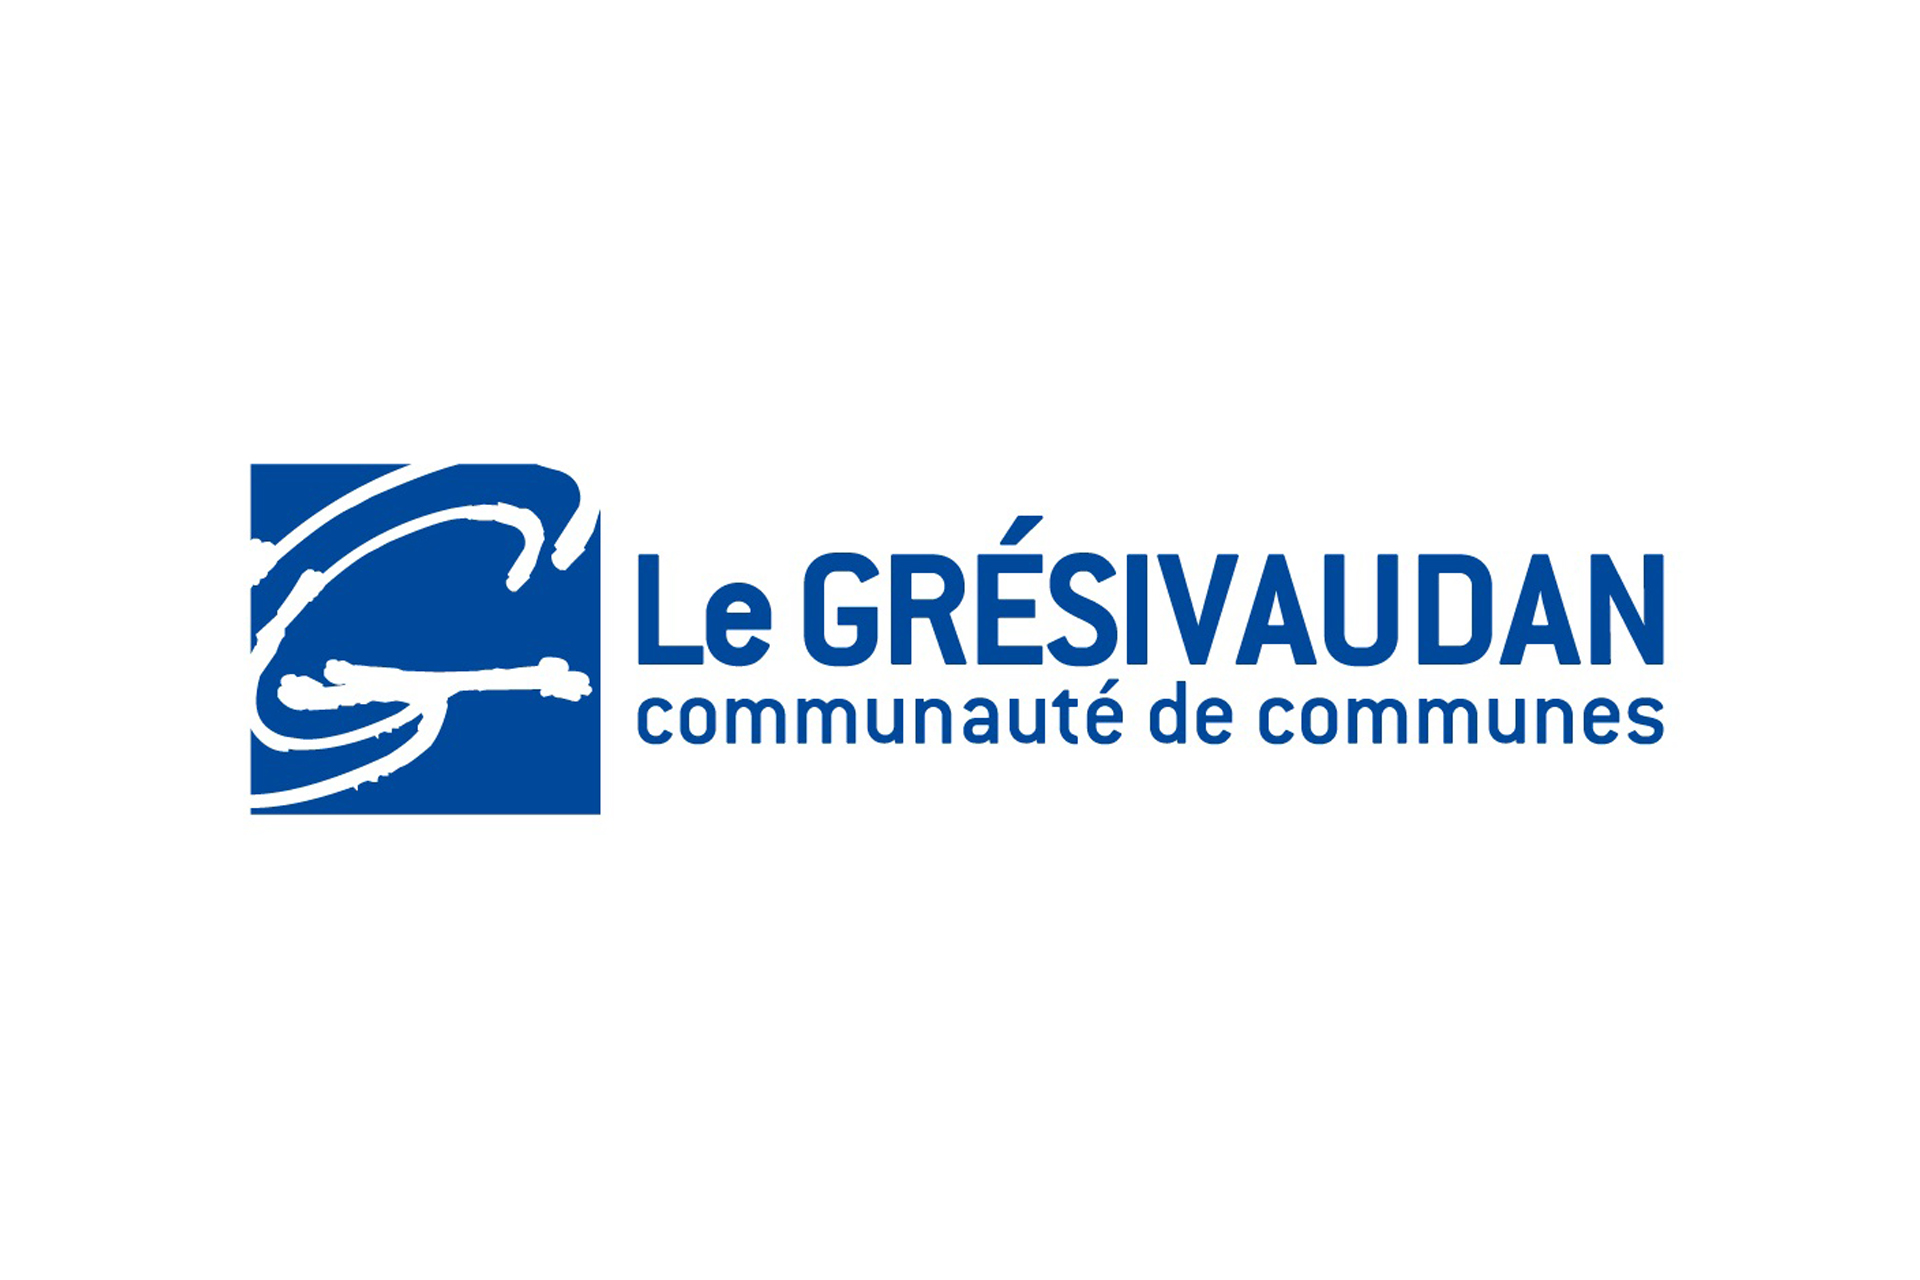 Chamrousse logo partner institution community grésivaudan ski resort grenoble isere french alps france - © Communauté des communes du Grésivaudan